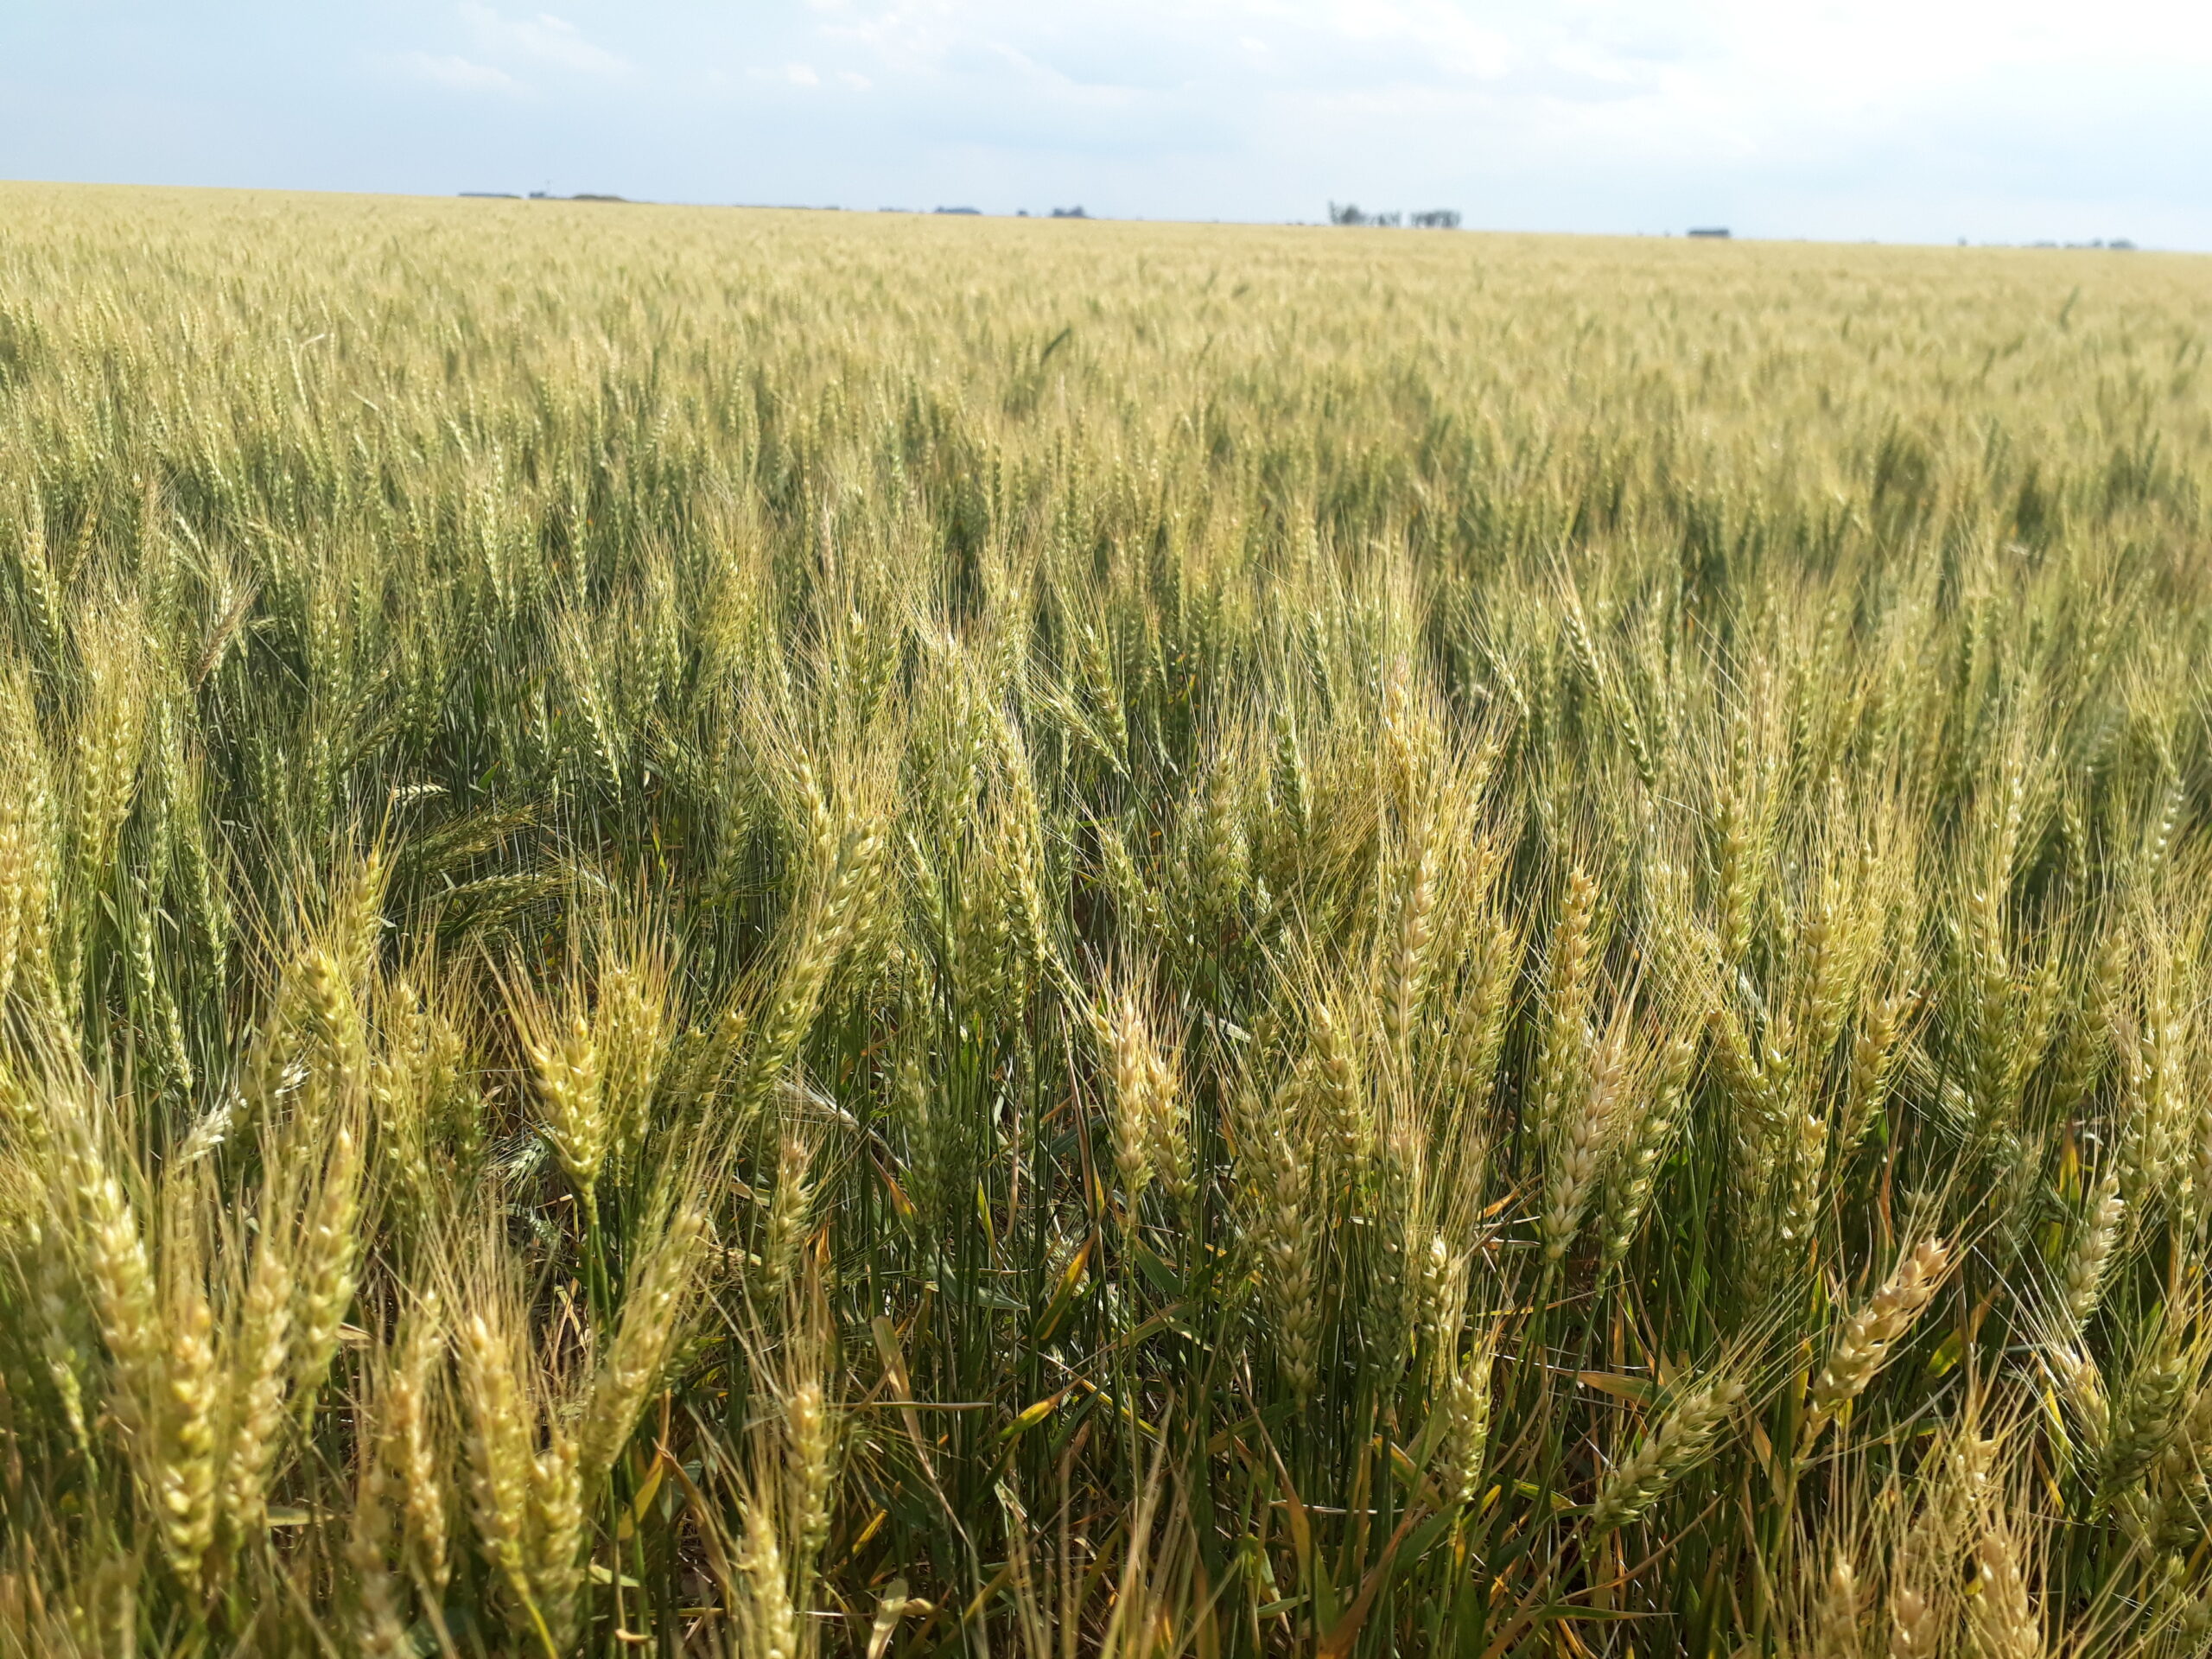 Los rendimientos en trigo estarán limitados por el déficit hídrico